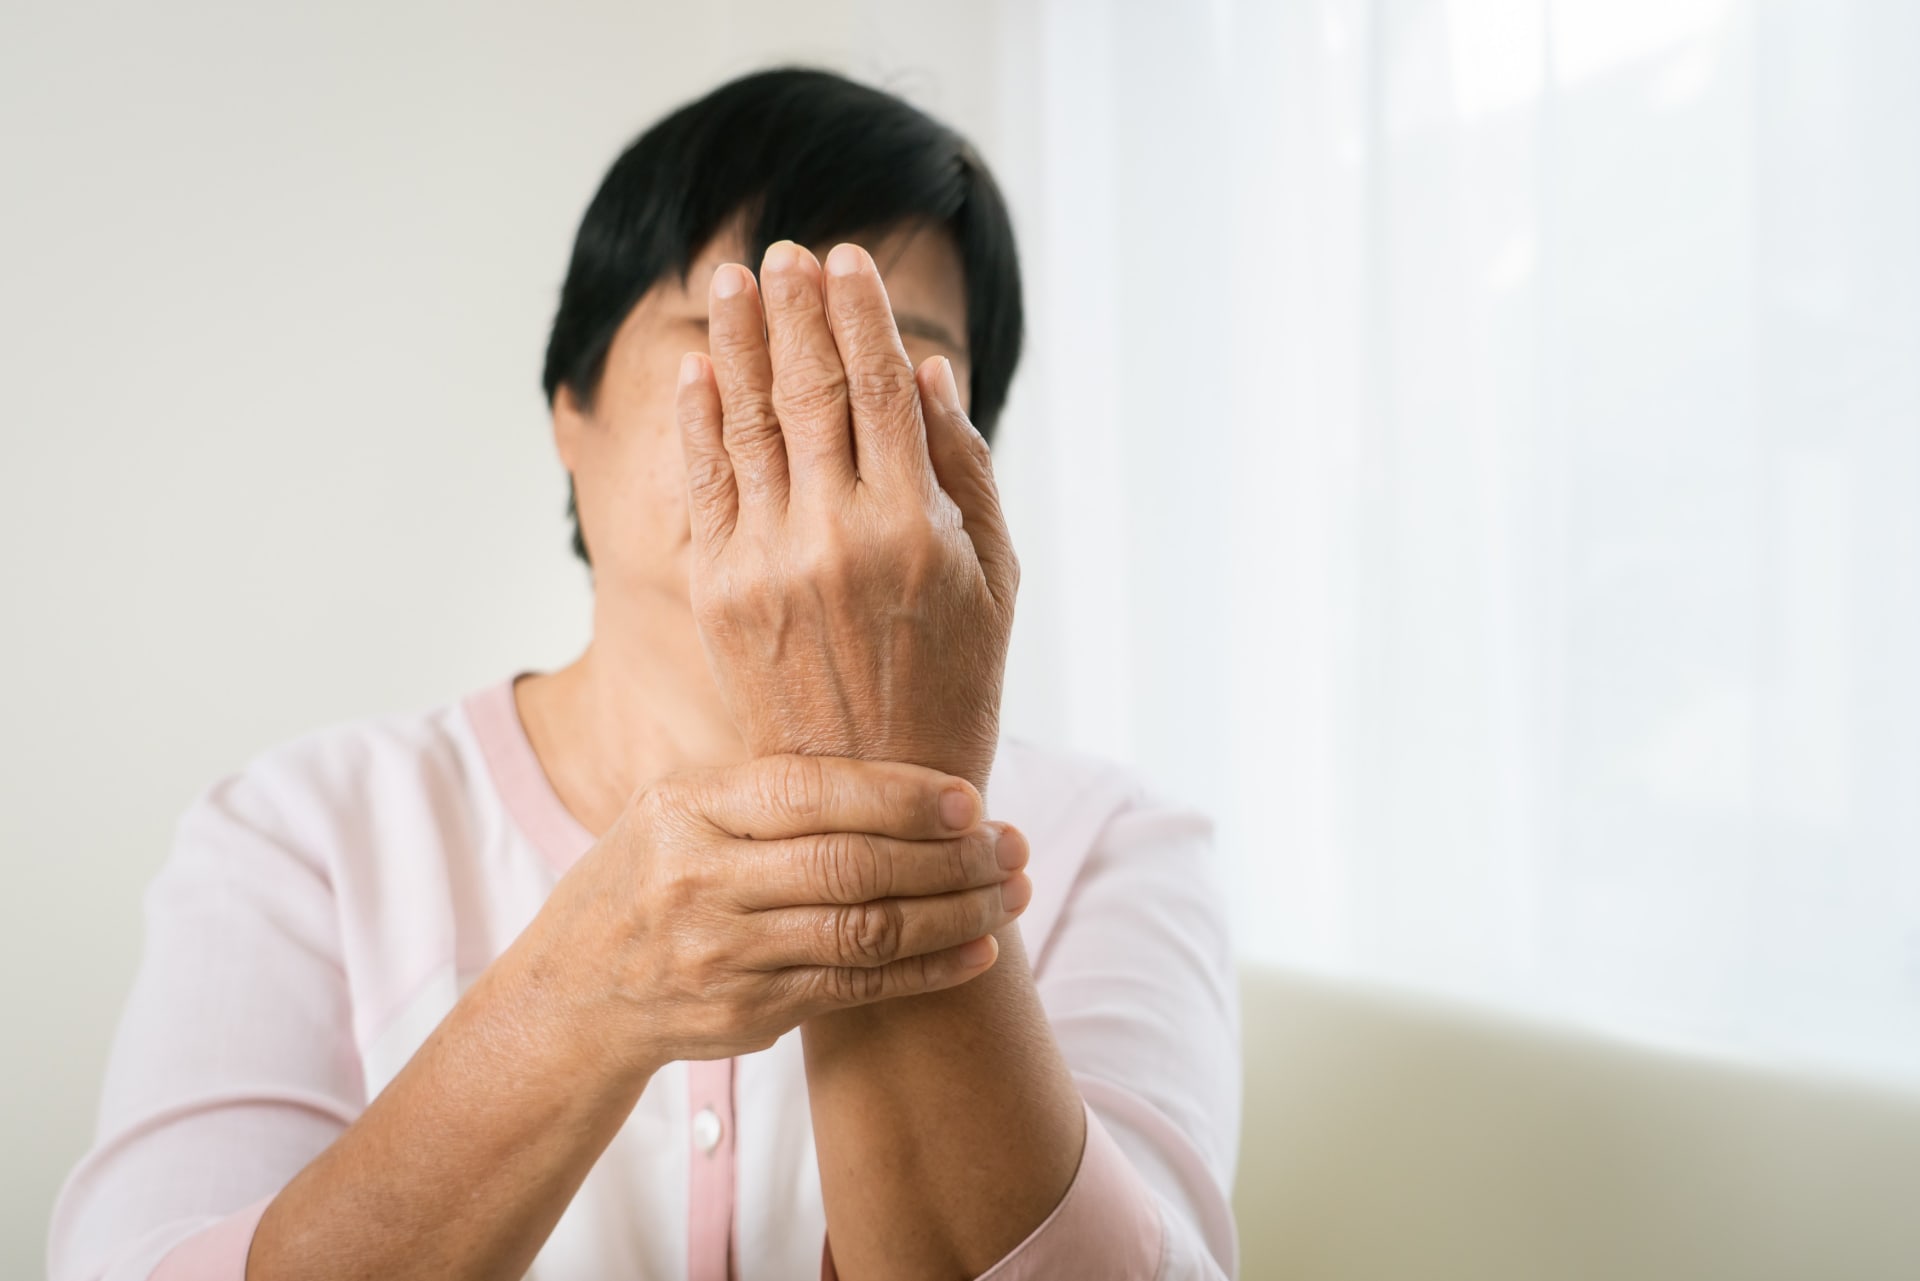 Revmatoidní artritida přináší pacientům úporné až nesnesitelné bolesti. (Profimedia)